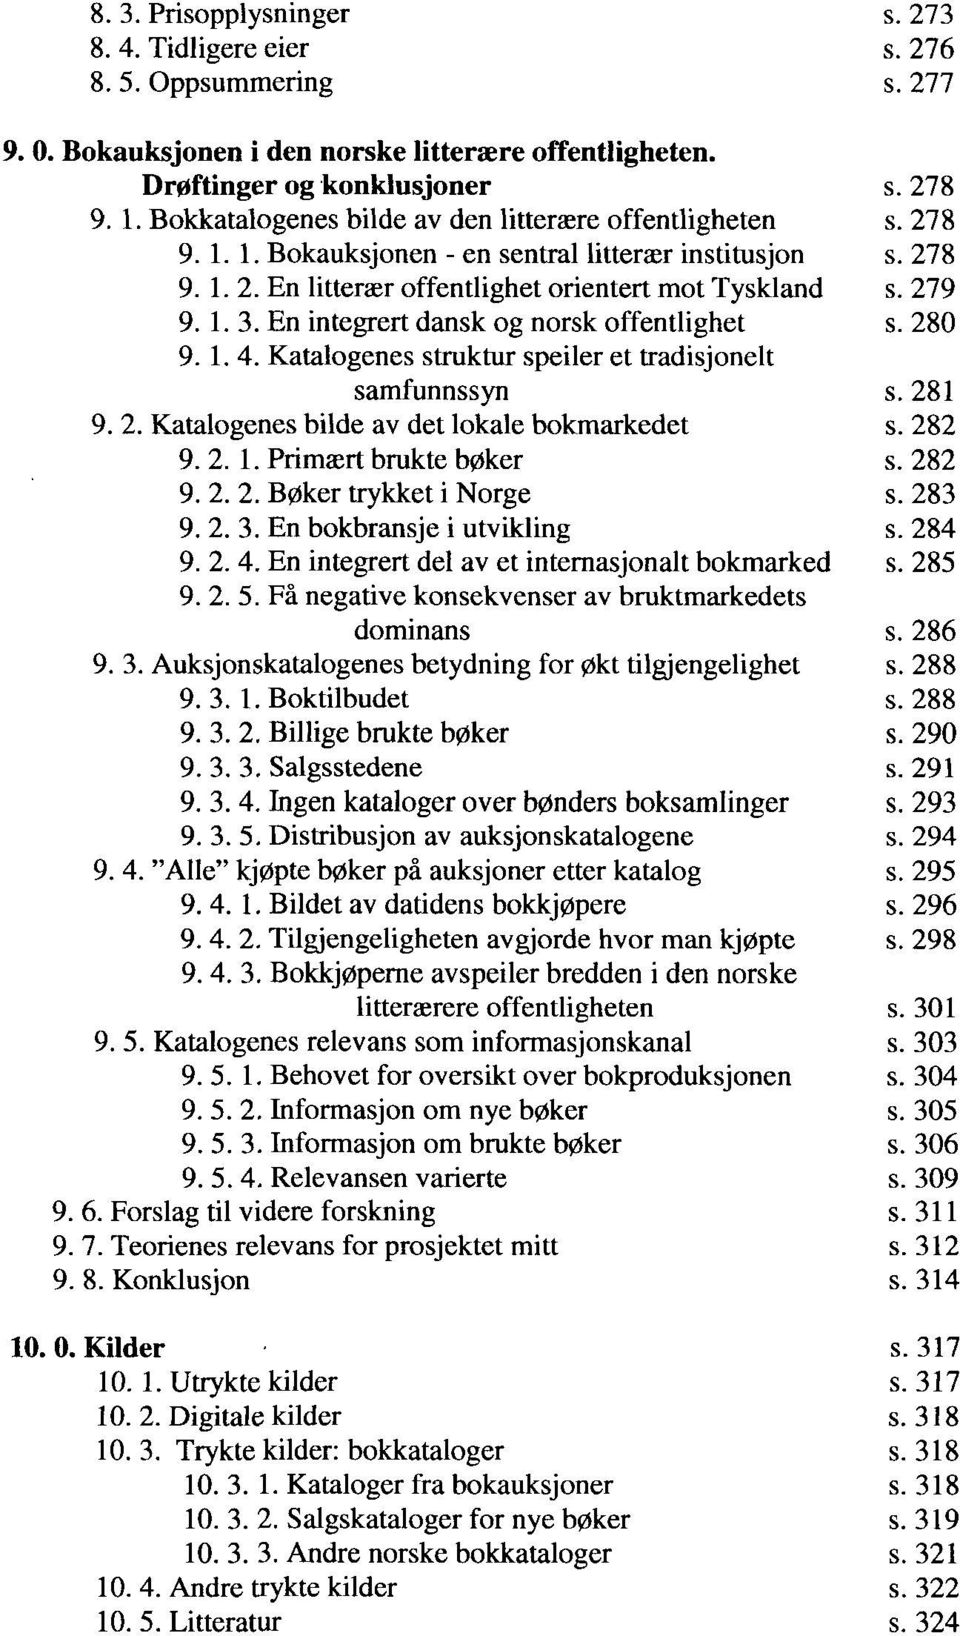 En integrert dansk og norsk offentlighet 280. 1.4. Katalogenes struktur speiler et tradisjonelt samfunnssyn 281. 2. Katalogenes bilde av det lokale bokmarkedet 282. 2. 1. Primært brukte bøker 282. 2. 2. Bøker trykket i Norge 283.